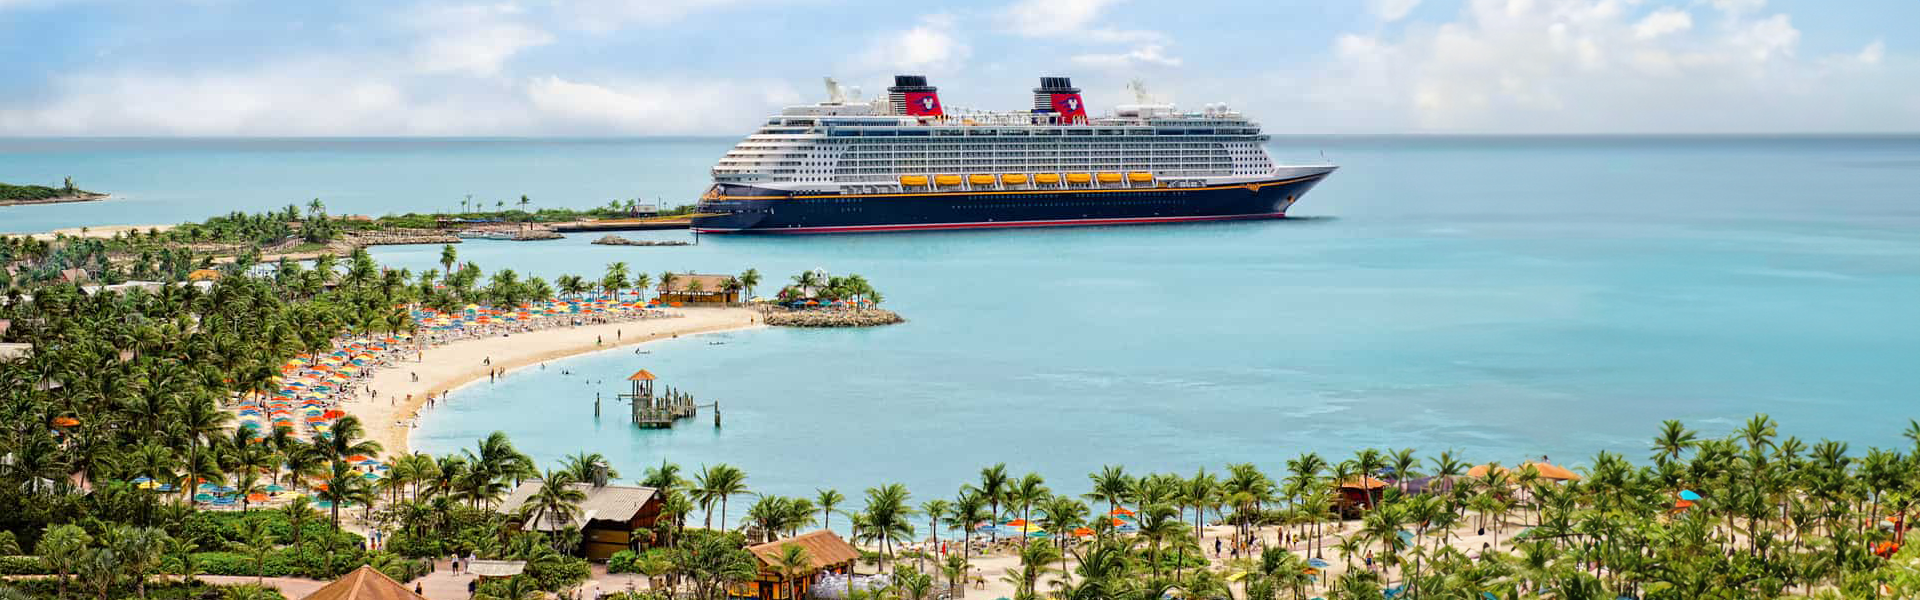 Descubre nuestras ofertas y disfruta de un Crucero Disney!